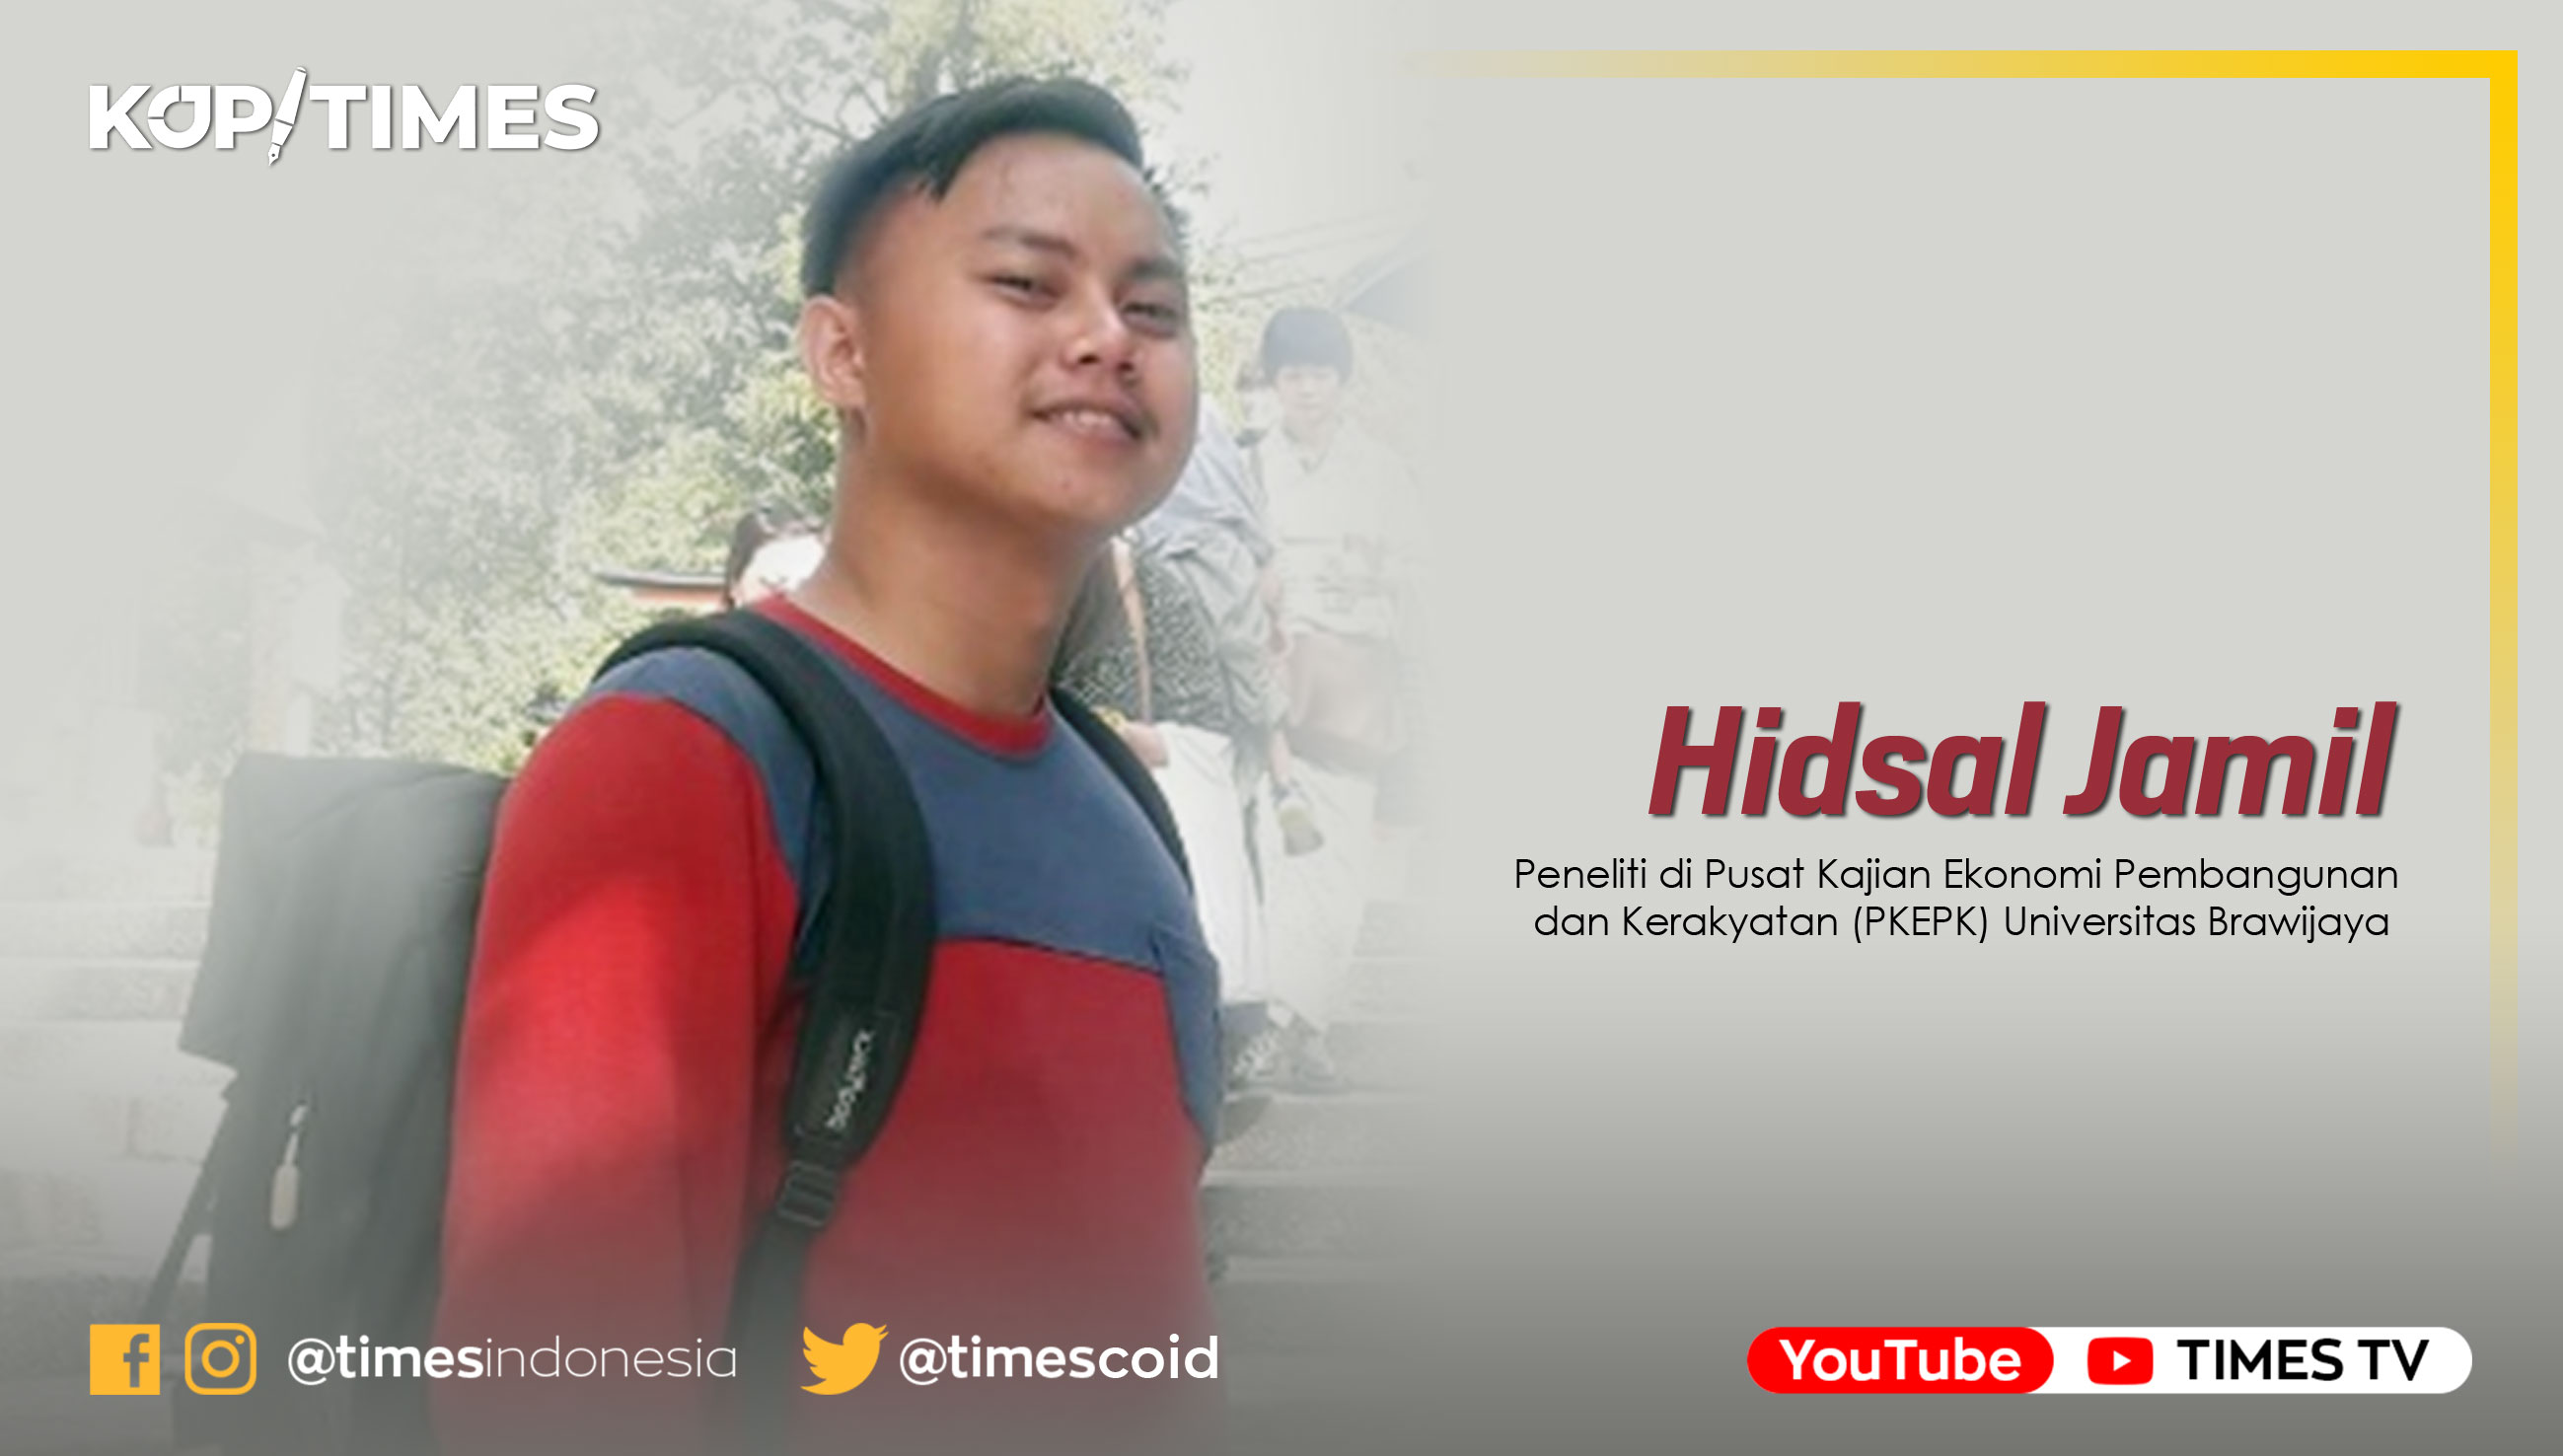 Hidsal Jamil, peneliti di Pusat Kajian Ekonomi Pembangunan dan Kerakyatan (PKEPK) Universitas Brawijaya Malang.